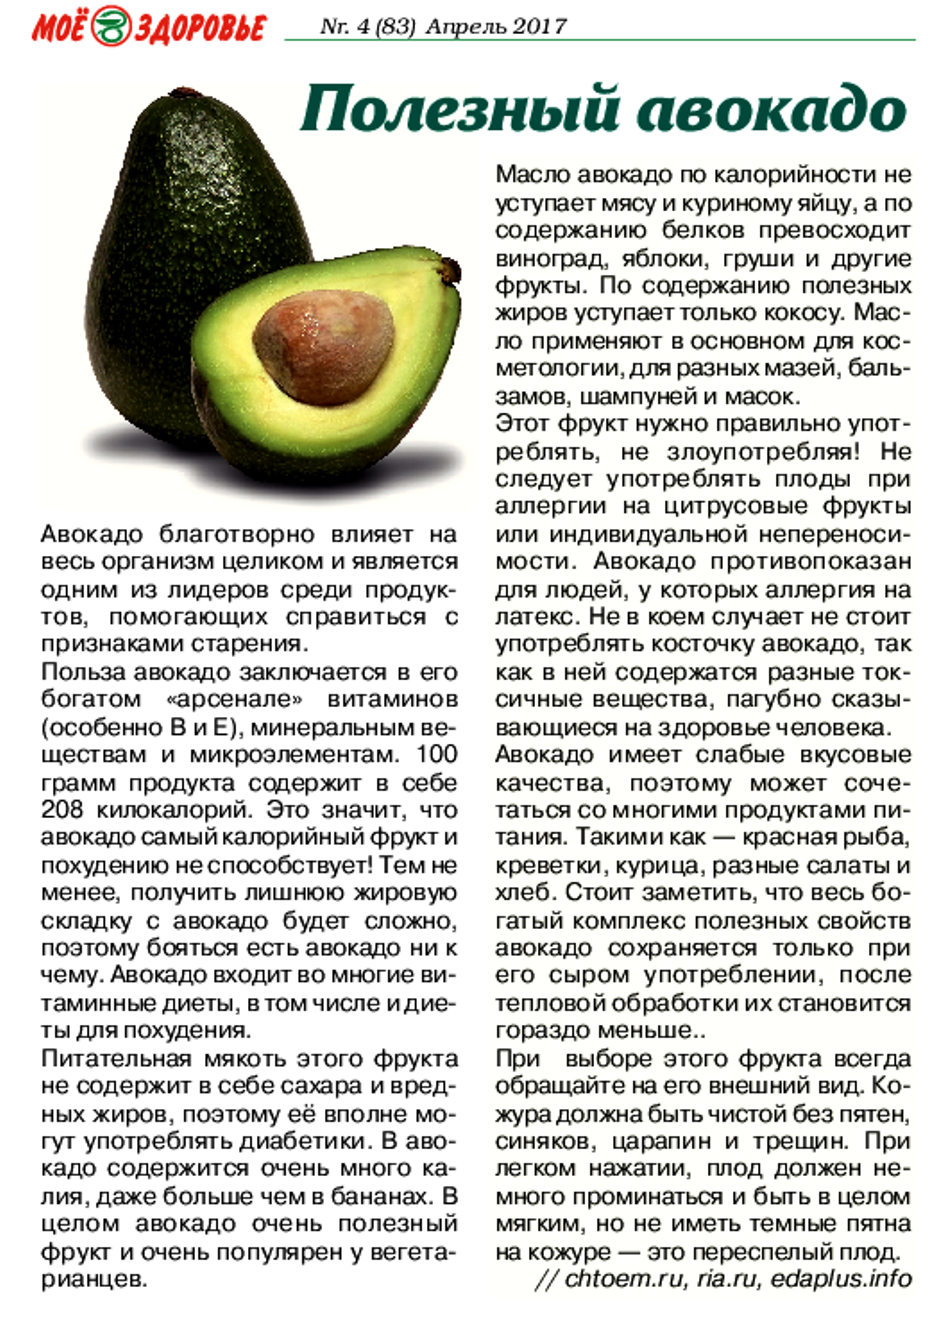 Авокадо: это фрукт или овощ, польза, вред, как выбрать, хранить, есть